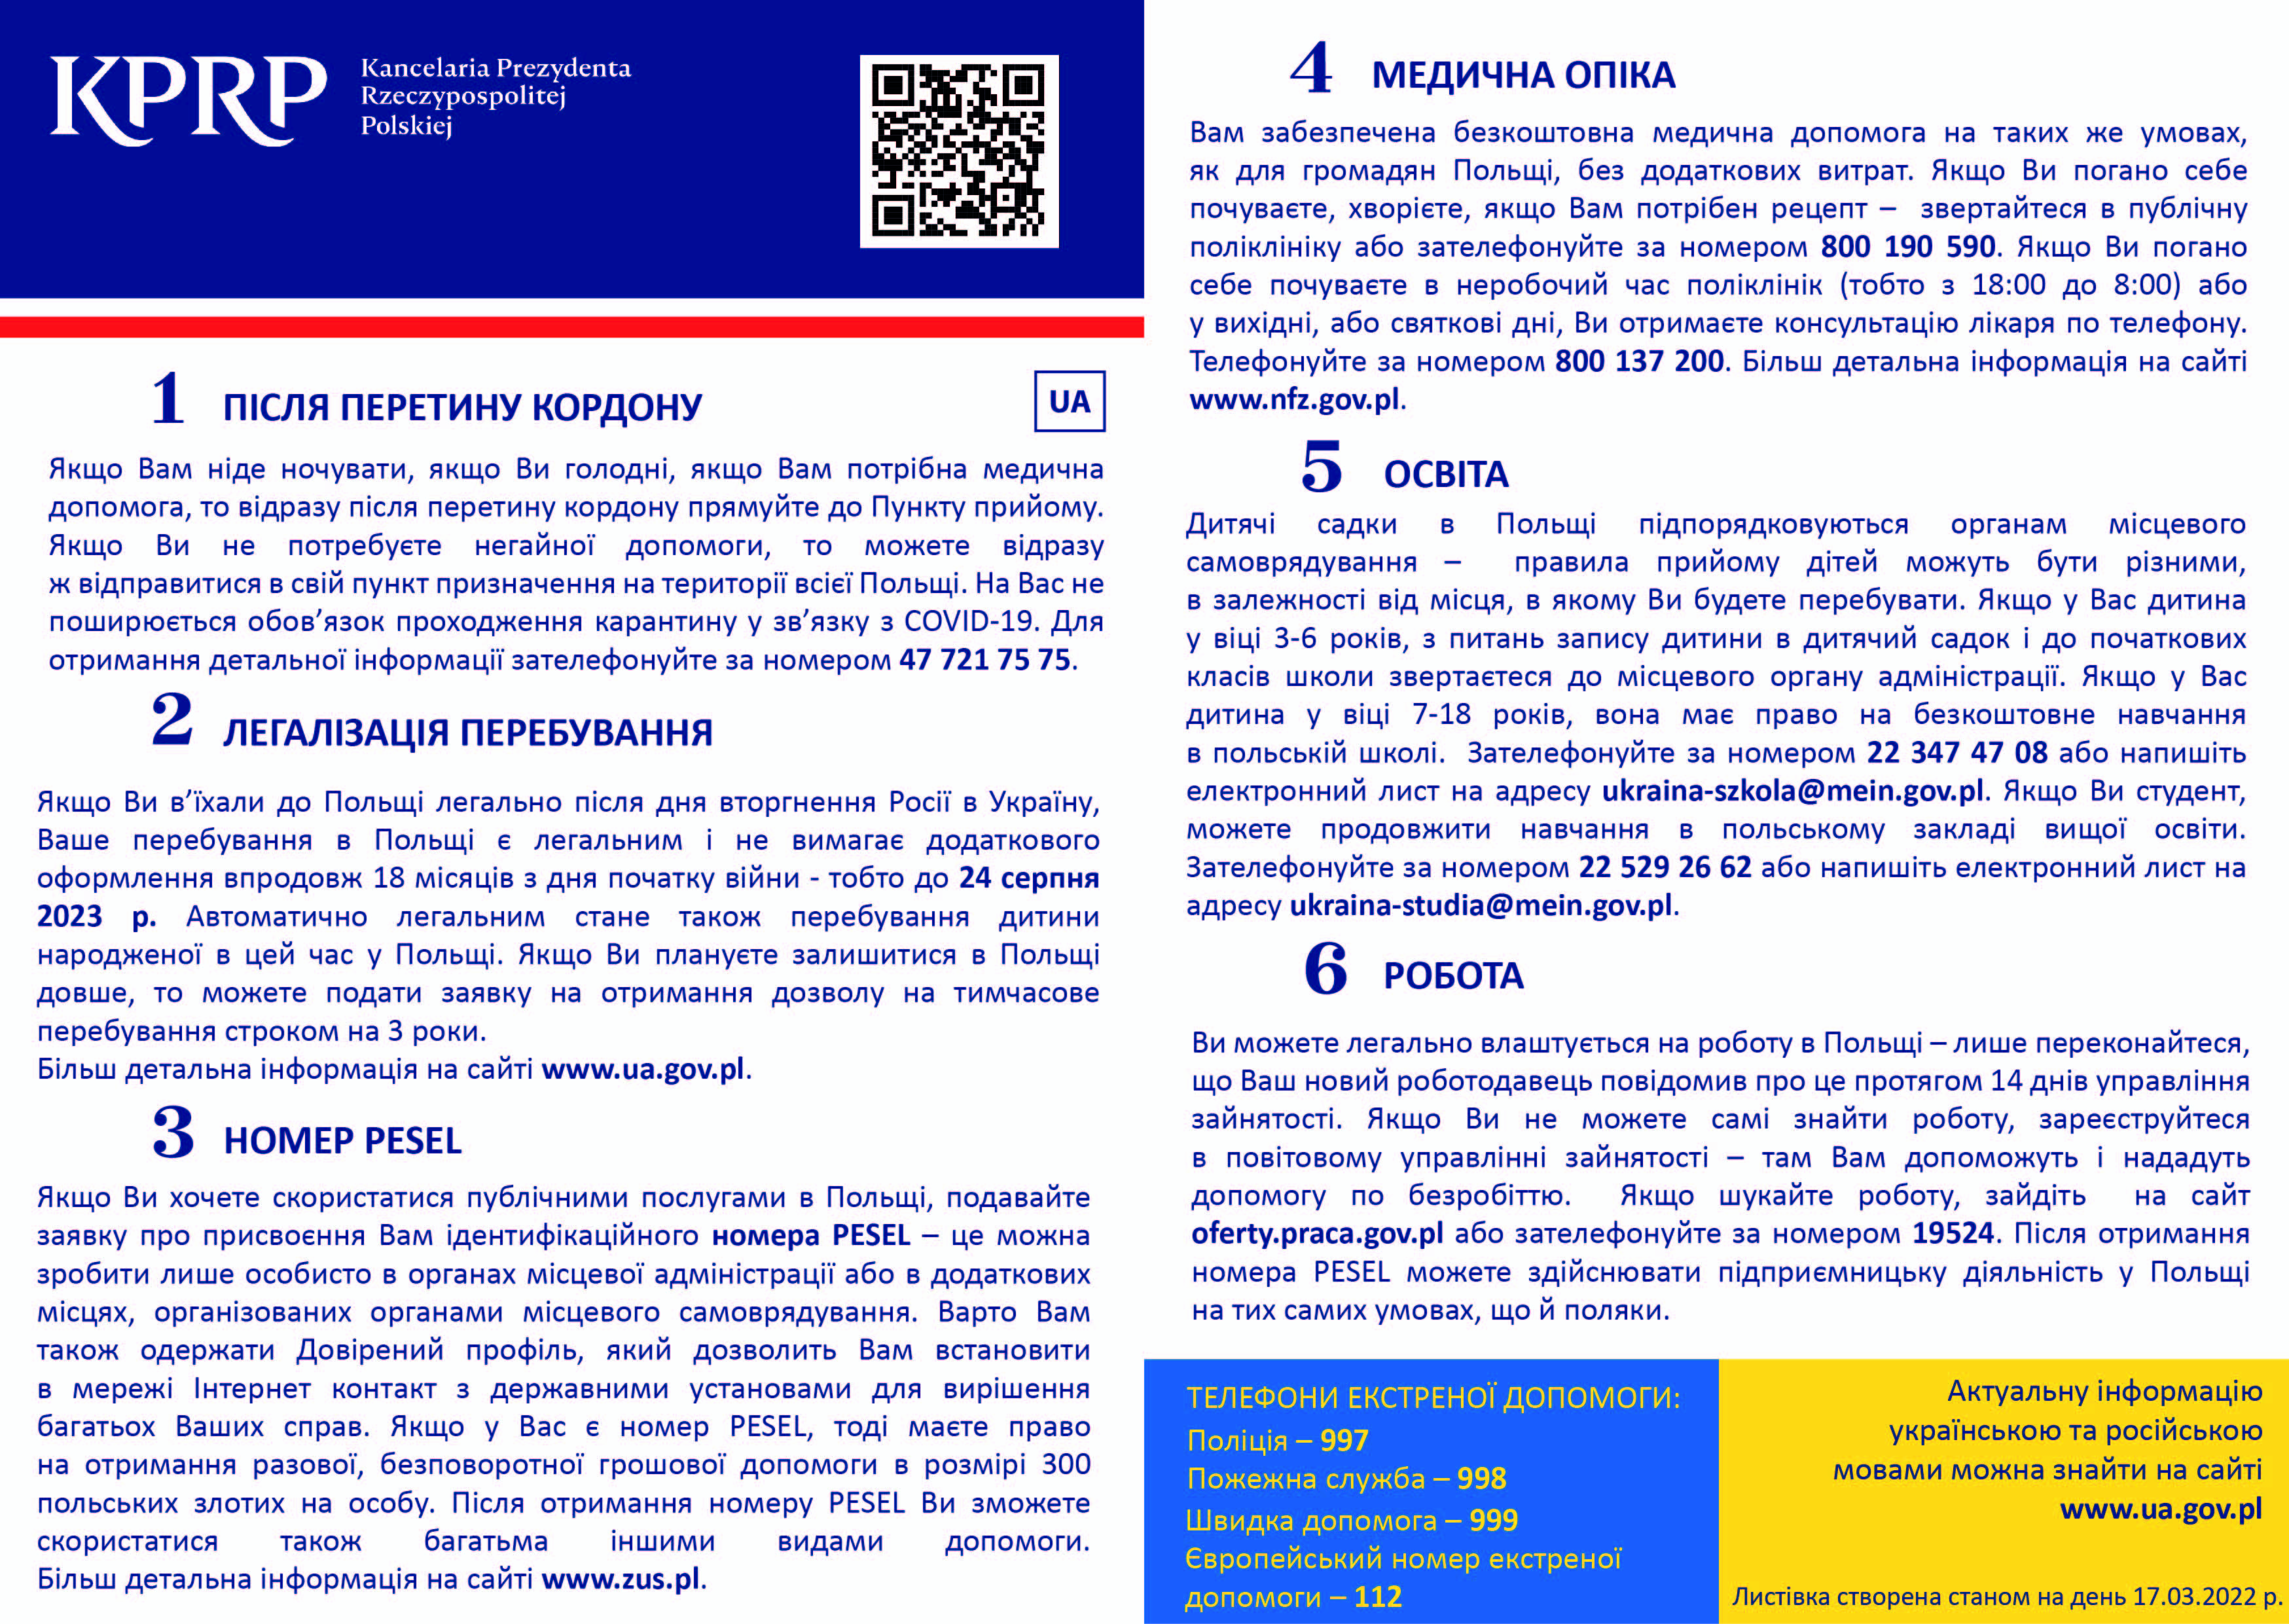 Ulotka informacyjna dla uchodźców z Ukrainy